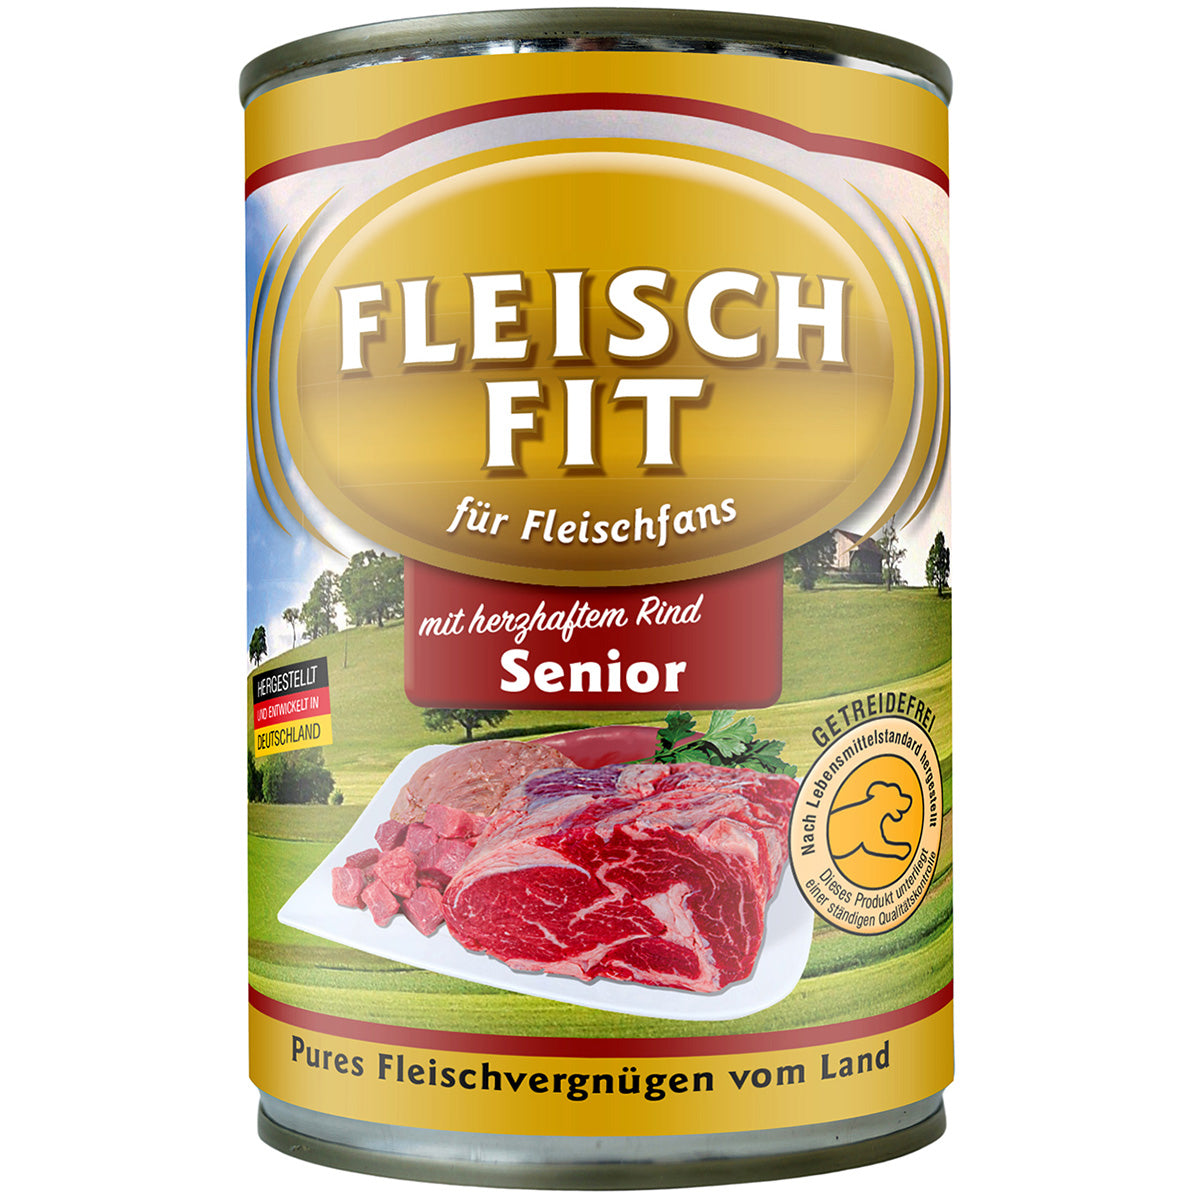 FleischFit Senior, 400 g